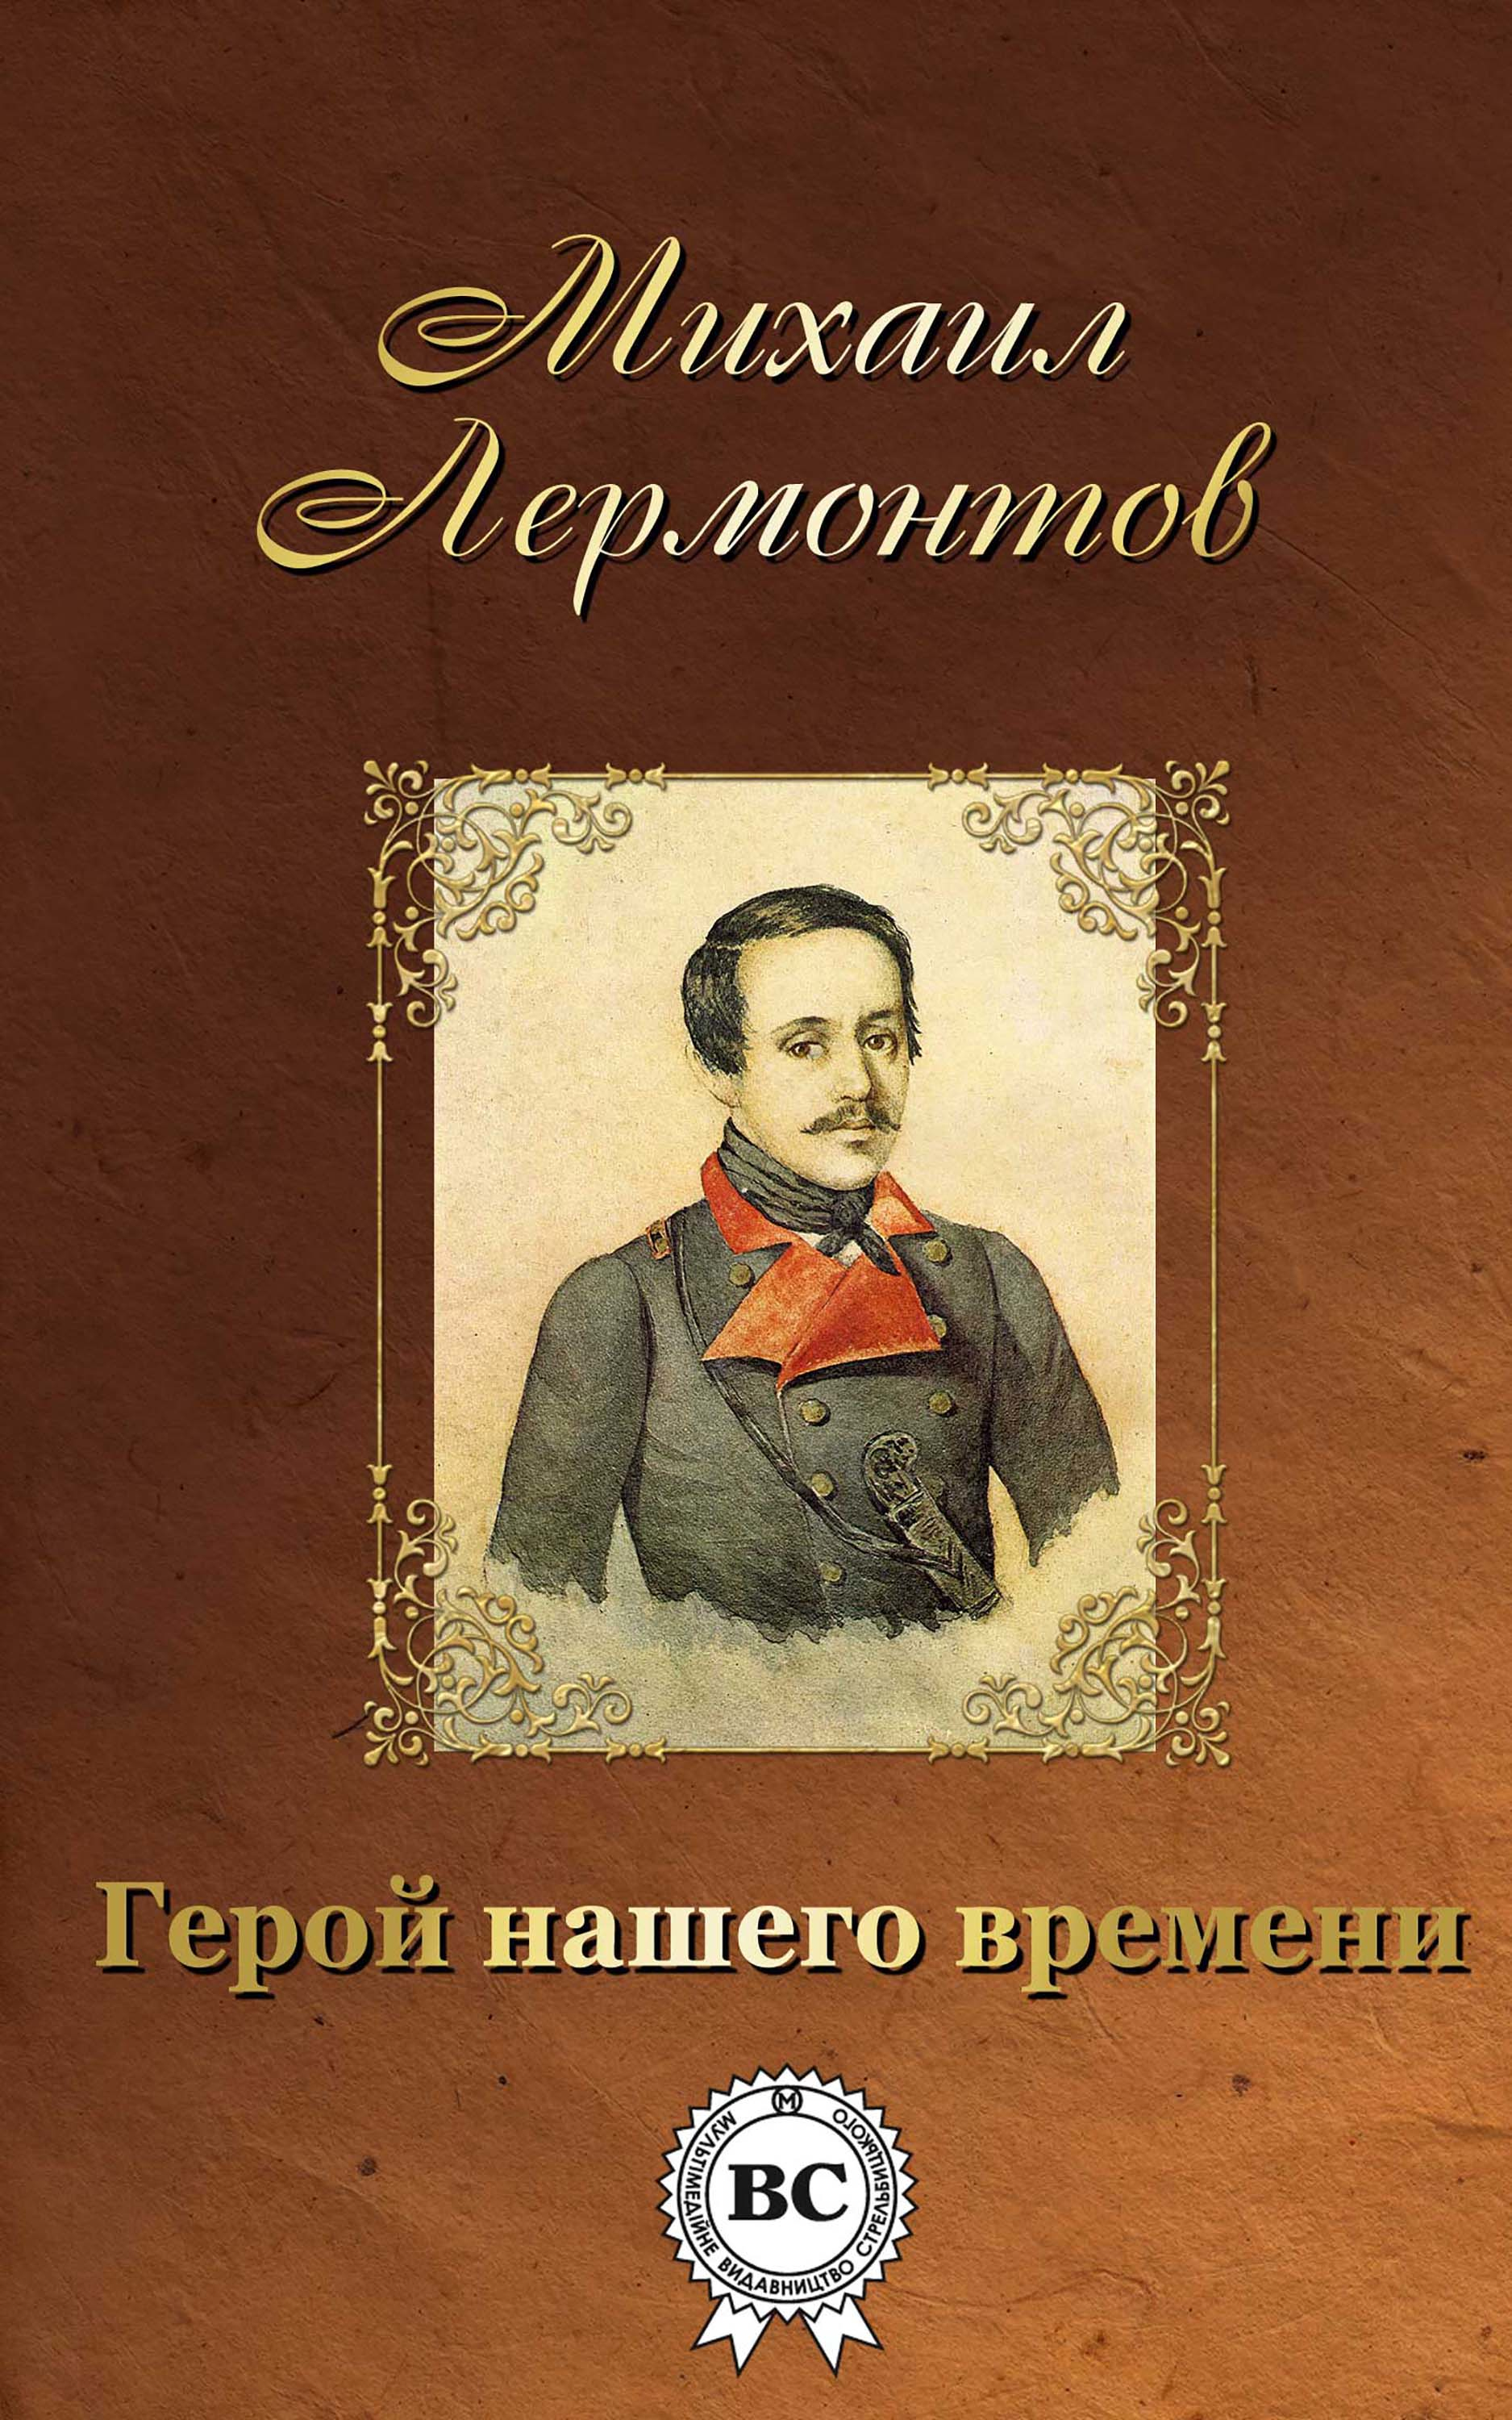 Обложка книги Лермонтова герой нашего времени